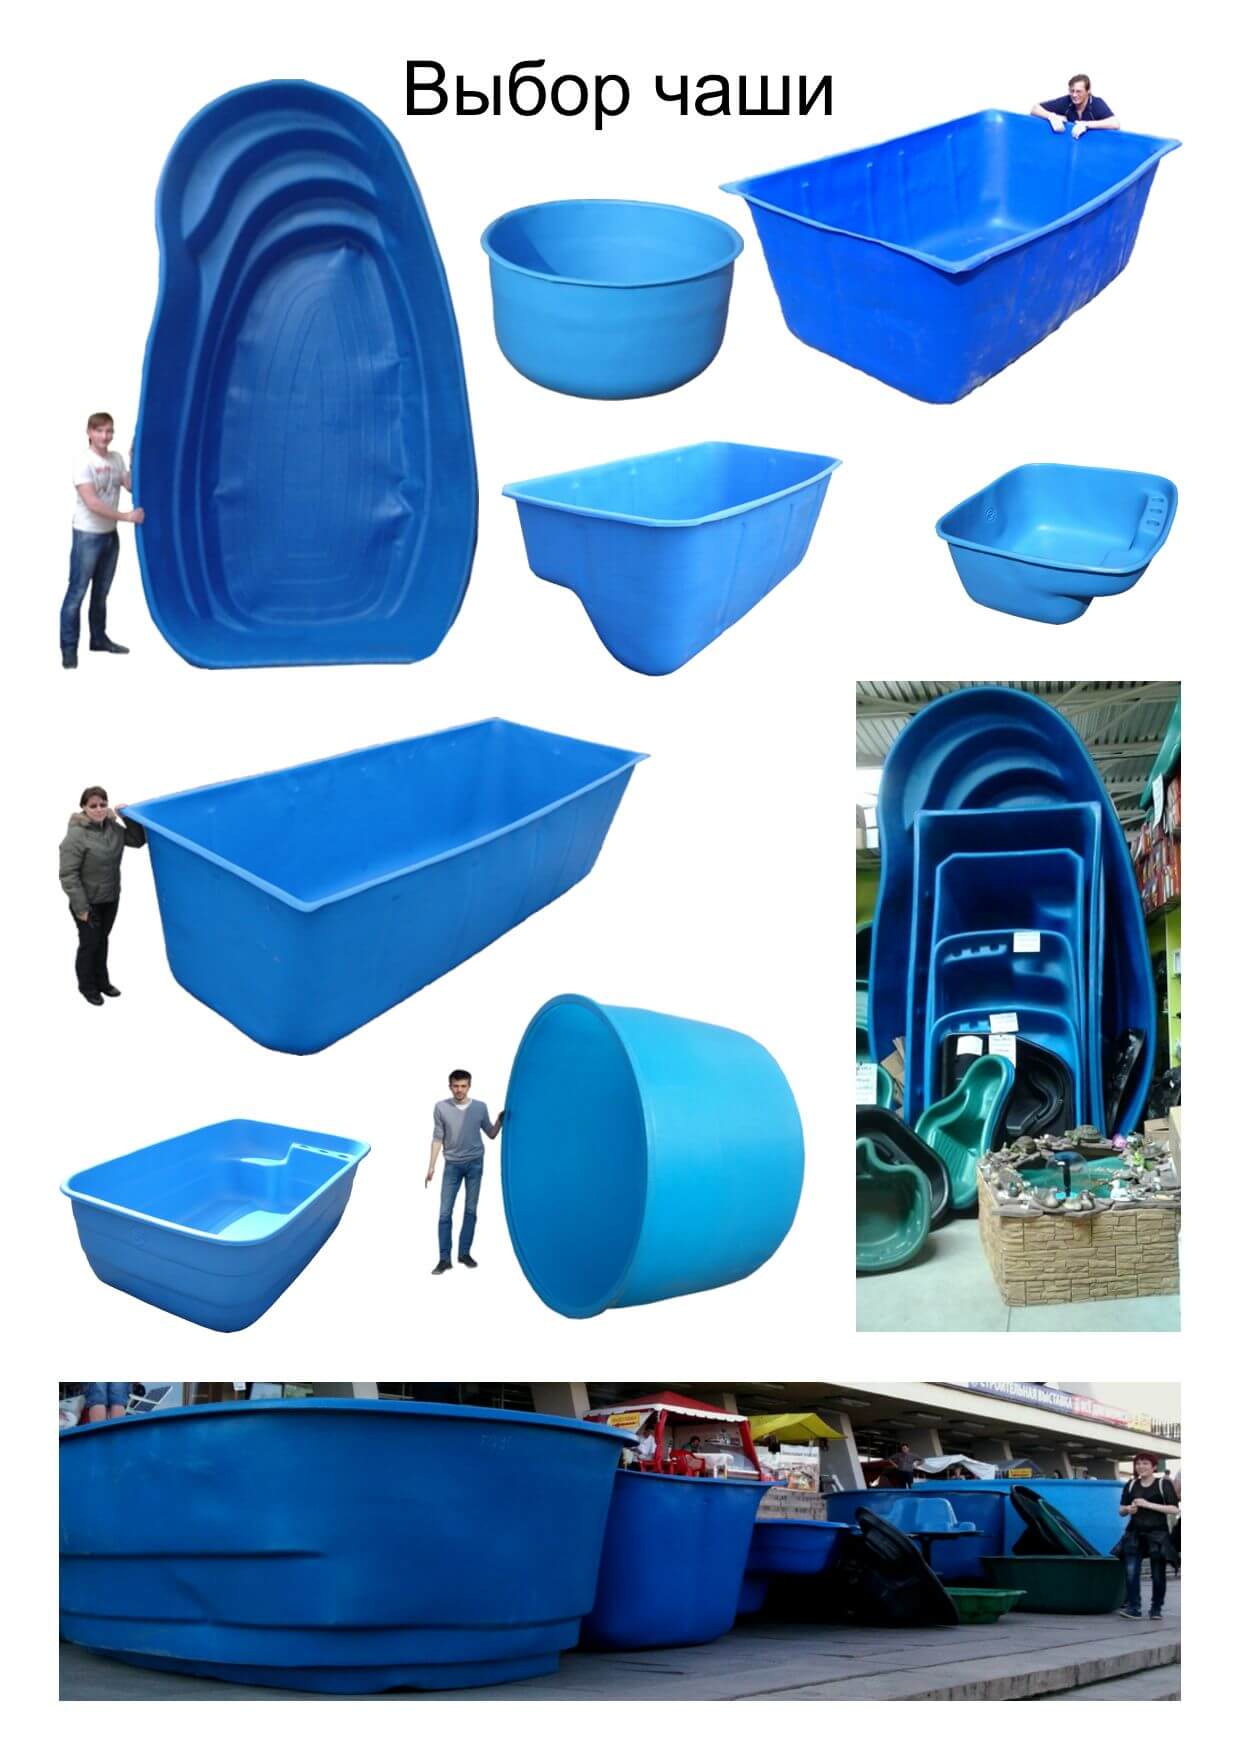 Пластиковый бассейн — оптимальный вариант для вашего дома или дачи